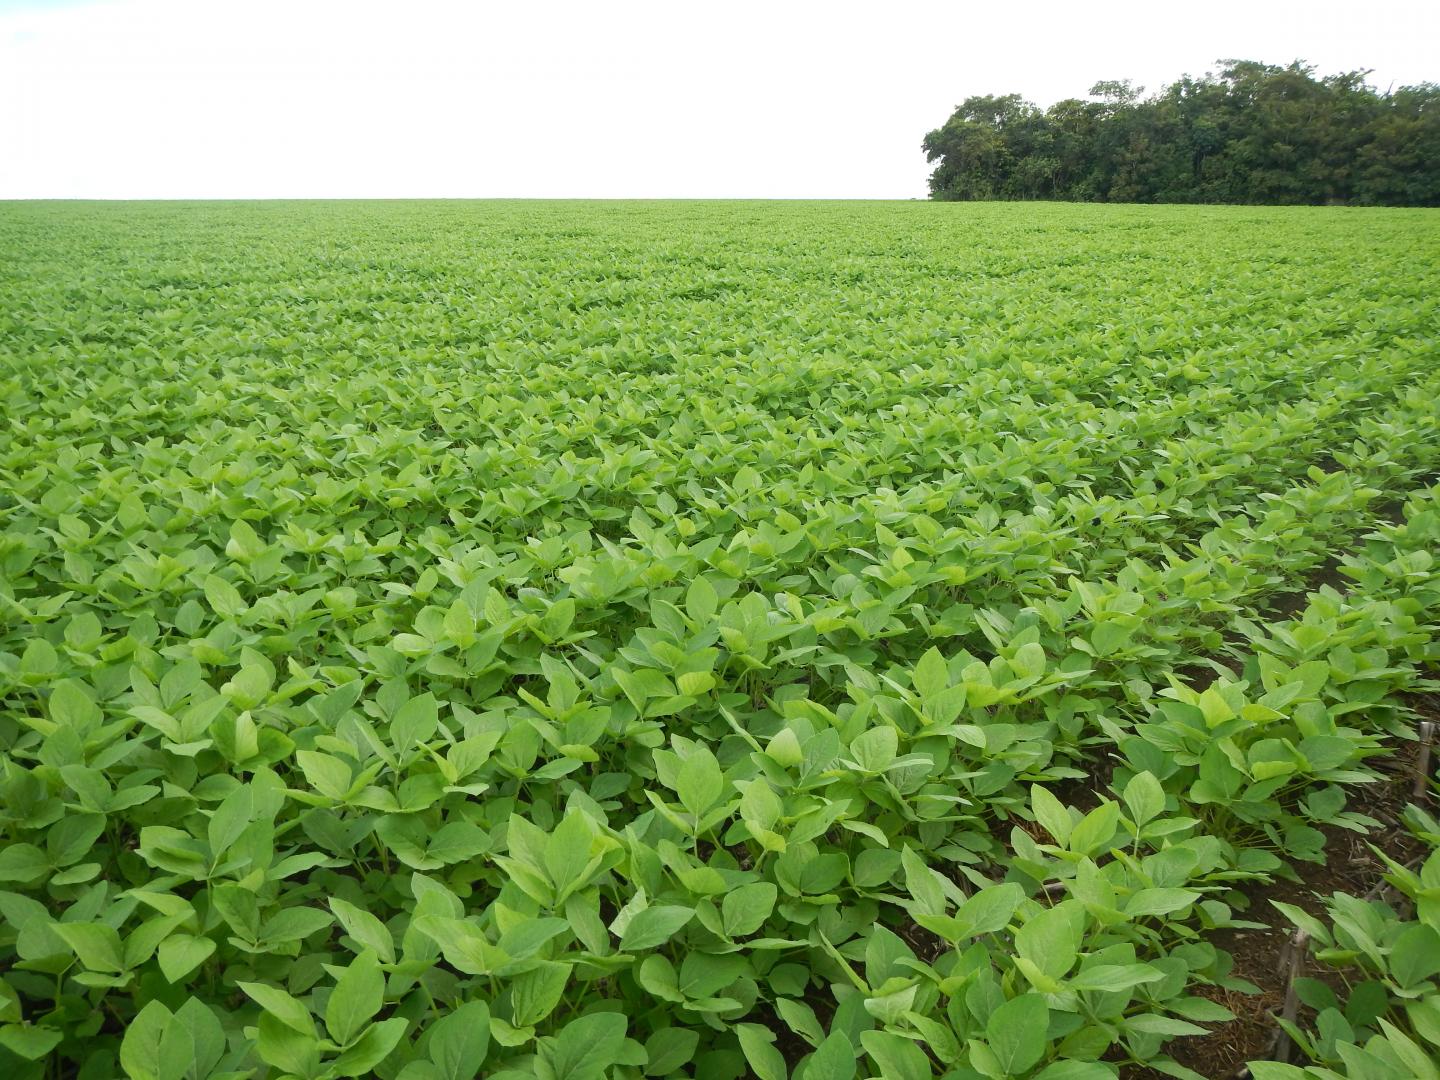 Soybeans in Brazil